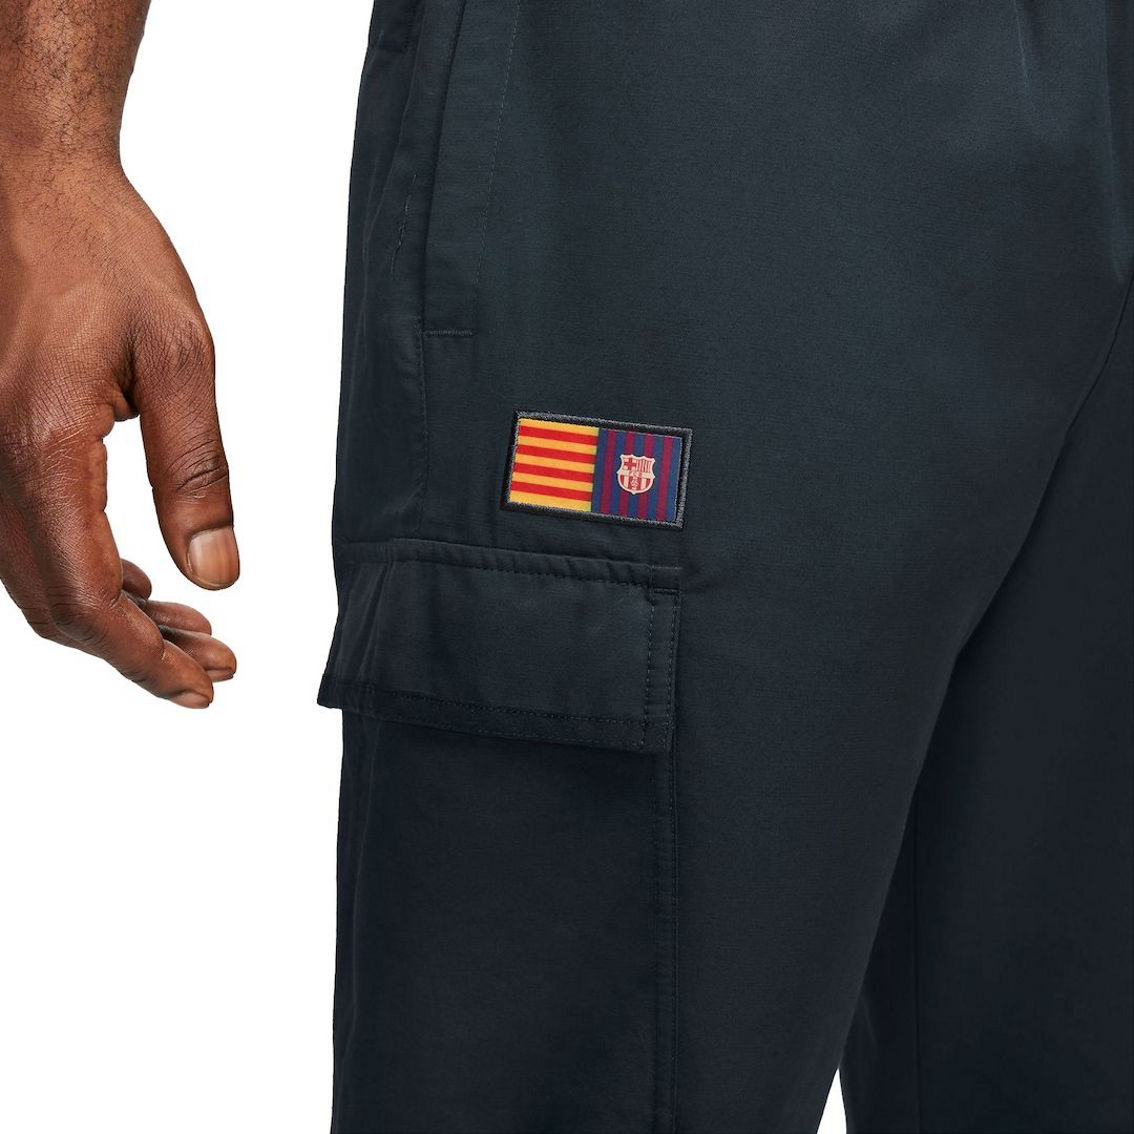 Nike Men's Blue Barcelona Woven Pants - Image 4 of 4